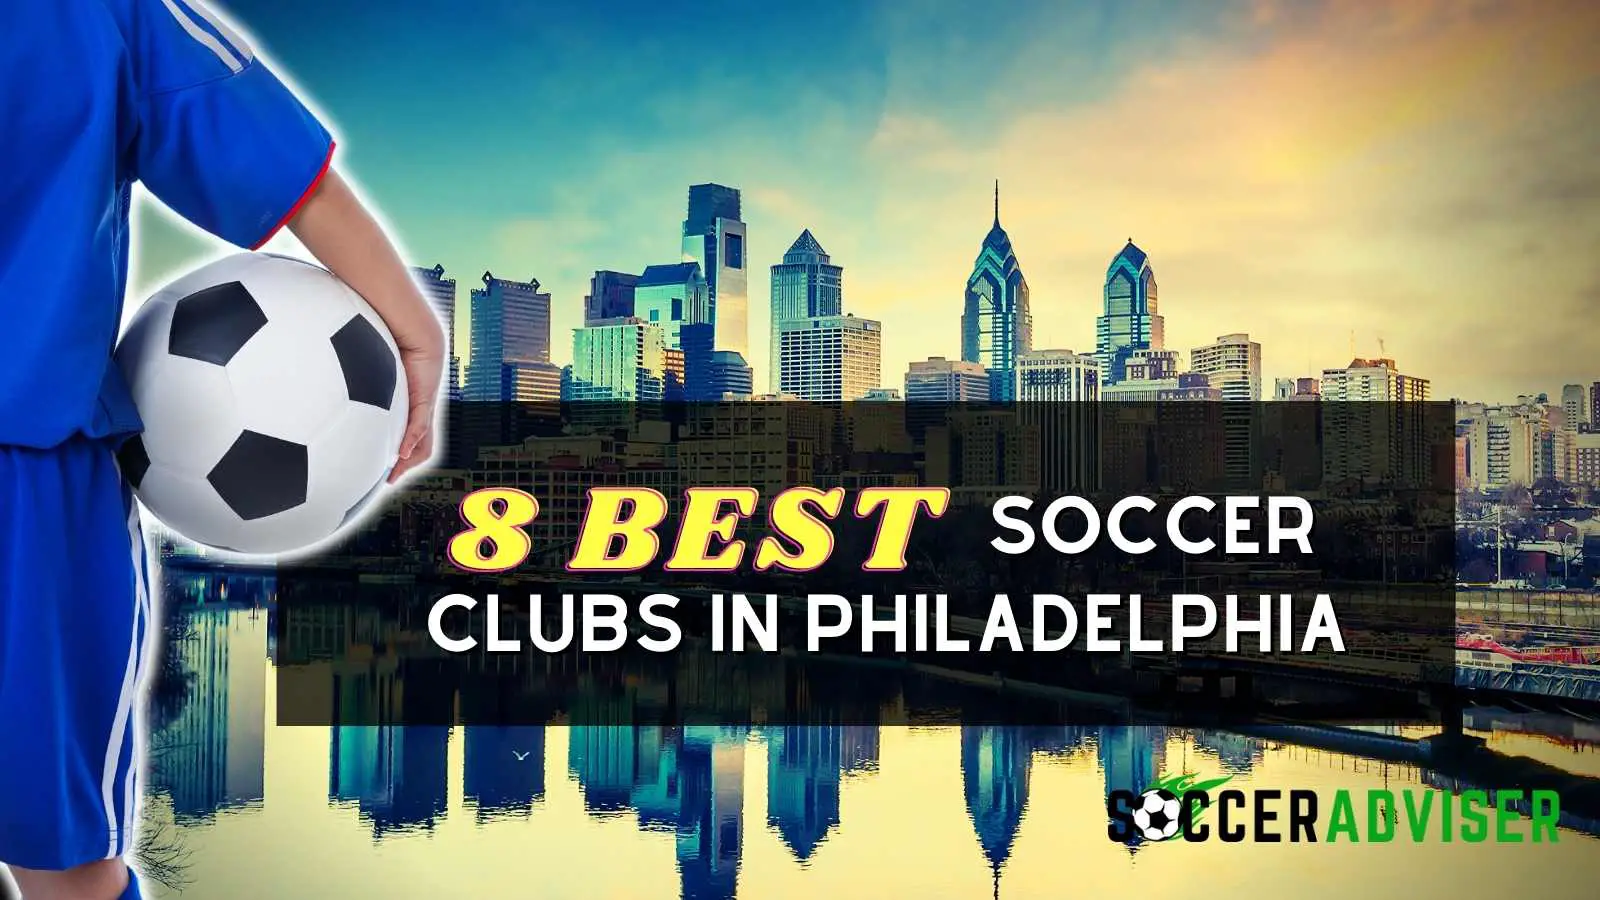 The 8 Best Soccer Clubs in Philadelphia